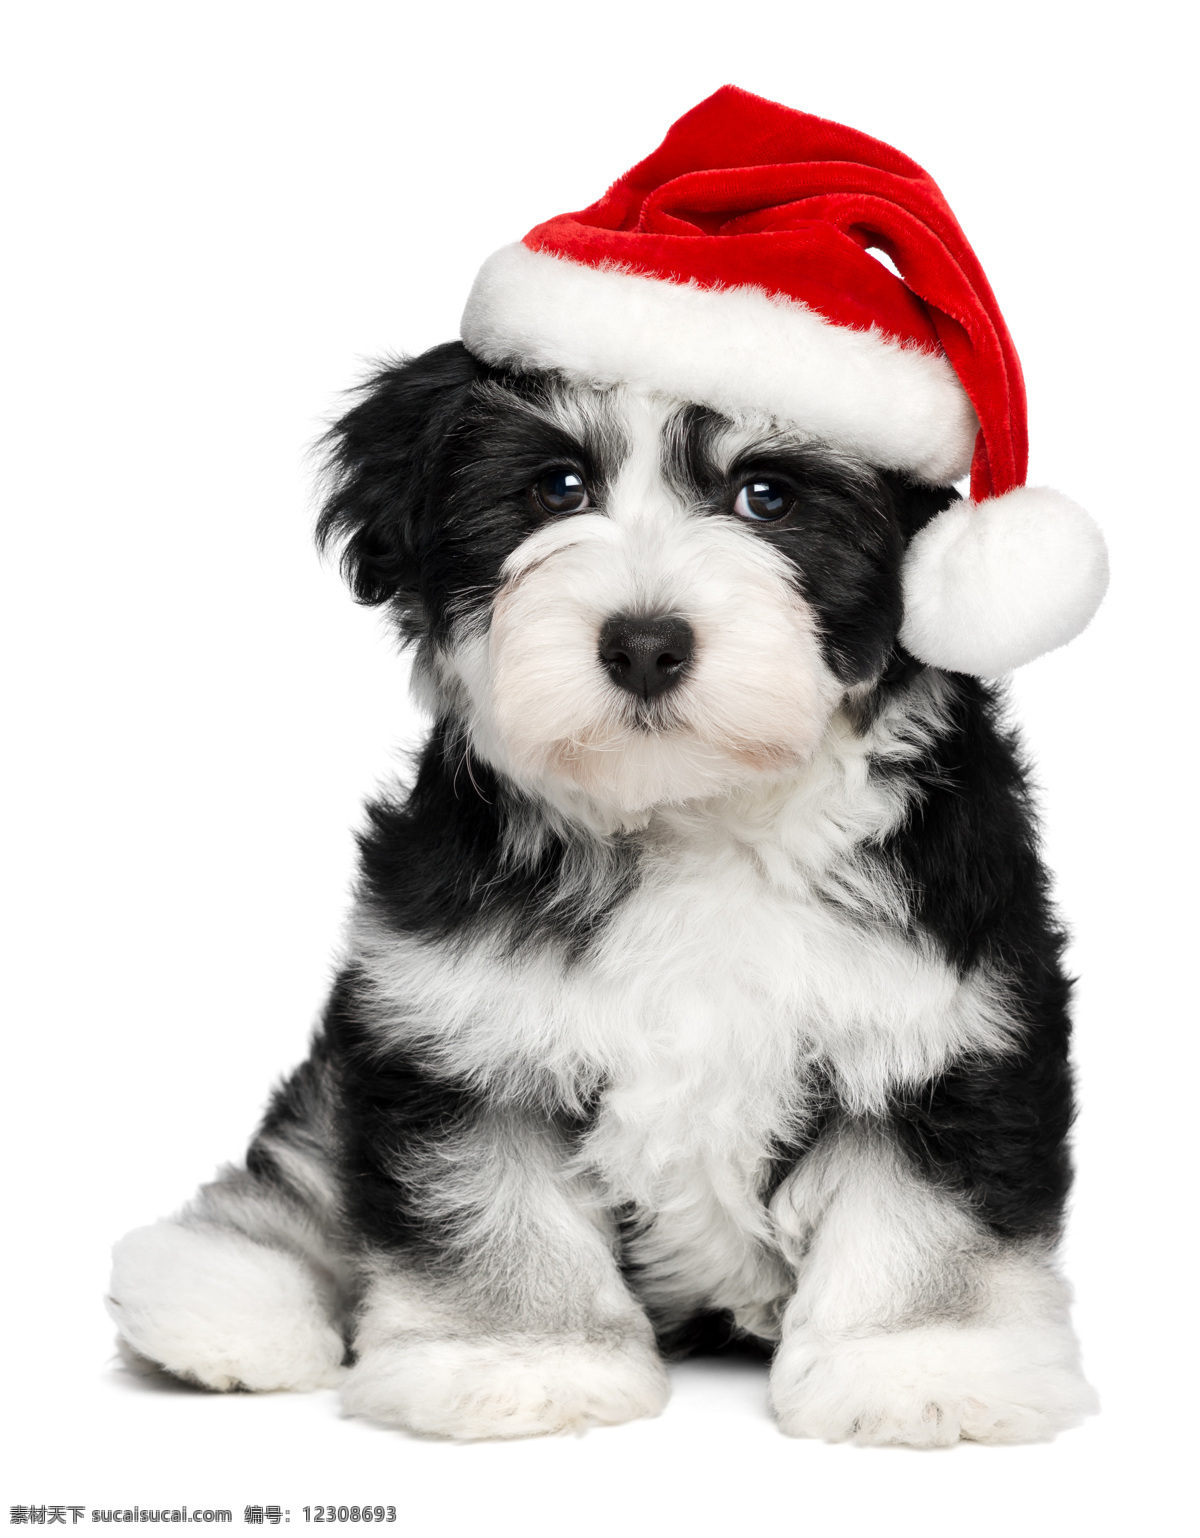 圣诞狗狗 圣诞节 小狗 萌狗狗 萌宠 宠物 可爱 狗狗 圣诞帽 动物 家禽家畜 生物世界